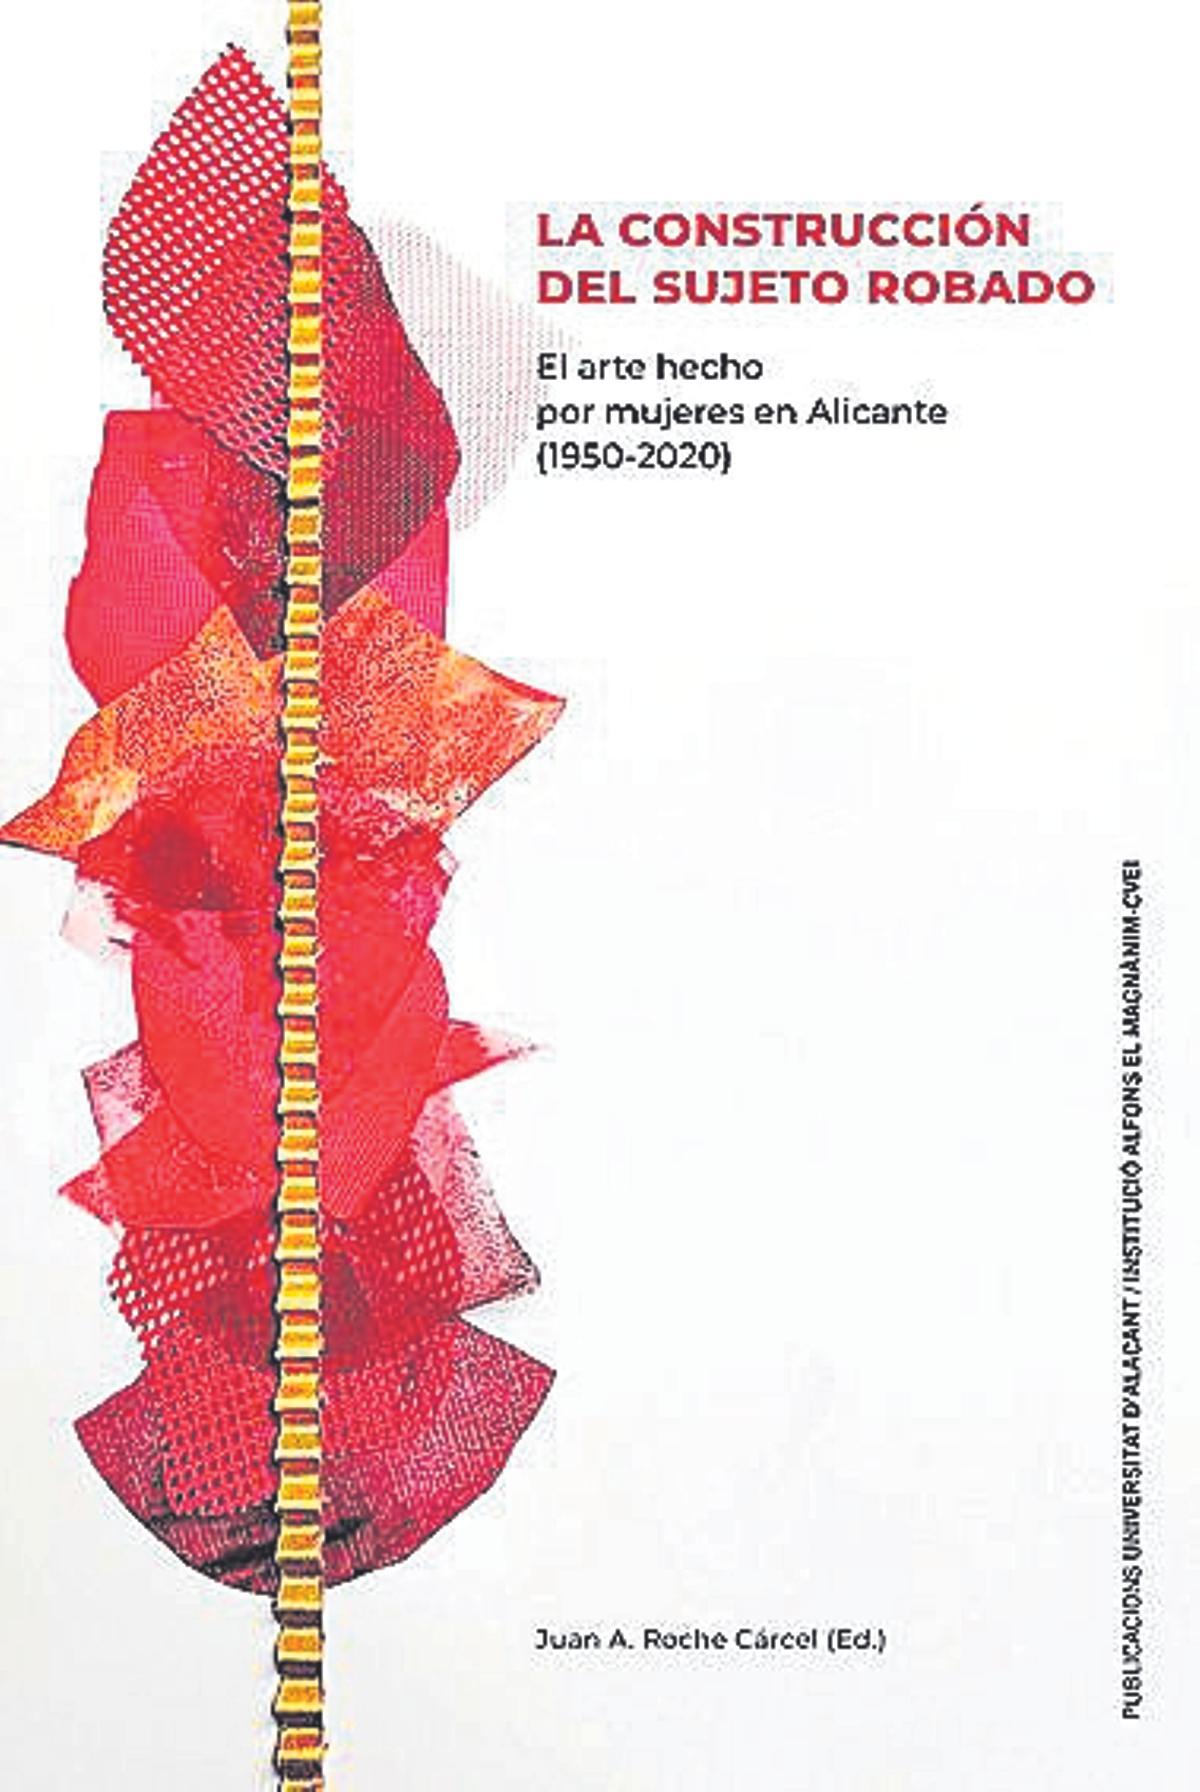 Juan Antonio Roche (ed)  La construcción del sujeto robado. El arte hecho por mujeres en Alicante (1950-2020)   Universitat d’Alacant/  Institució Alfons el   Magnànim-CVEI   288 páginas / 25 euros